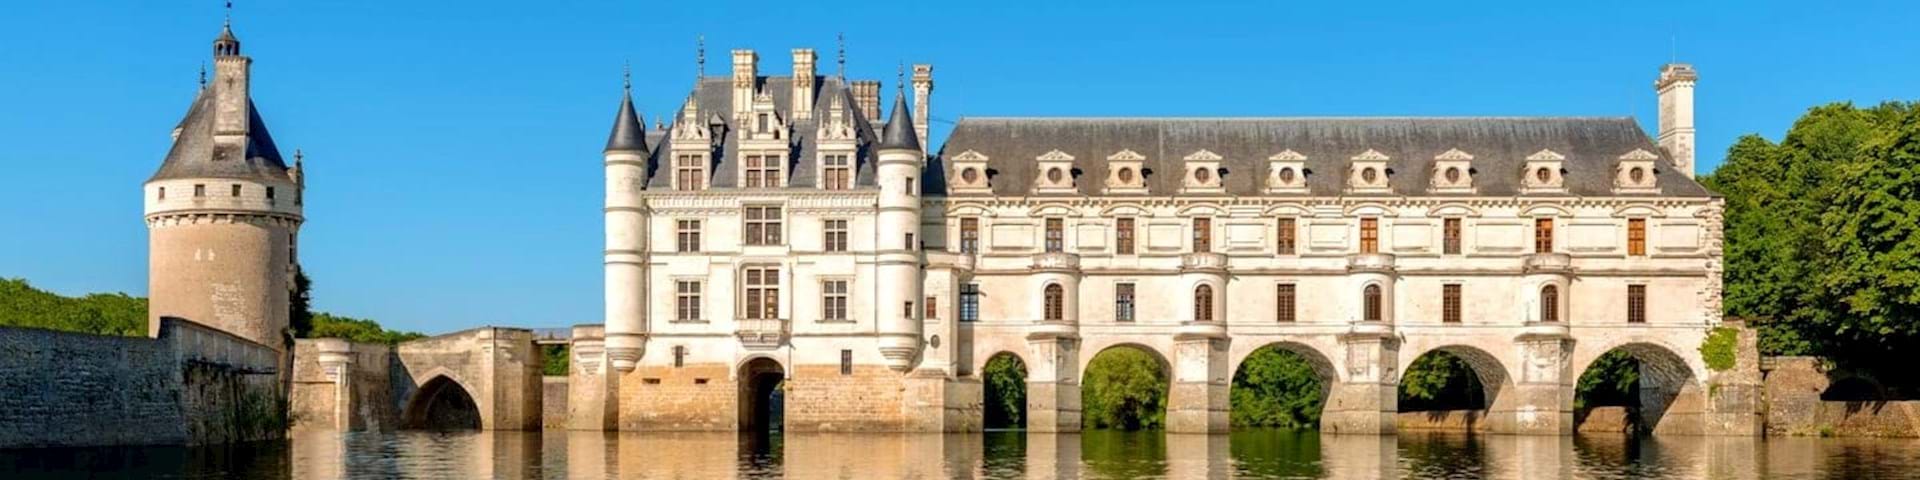 Loire Valley Castles Tours